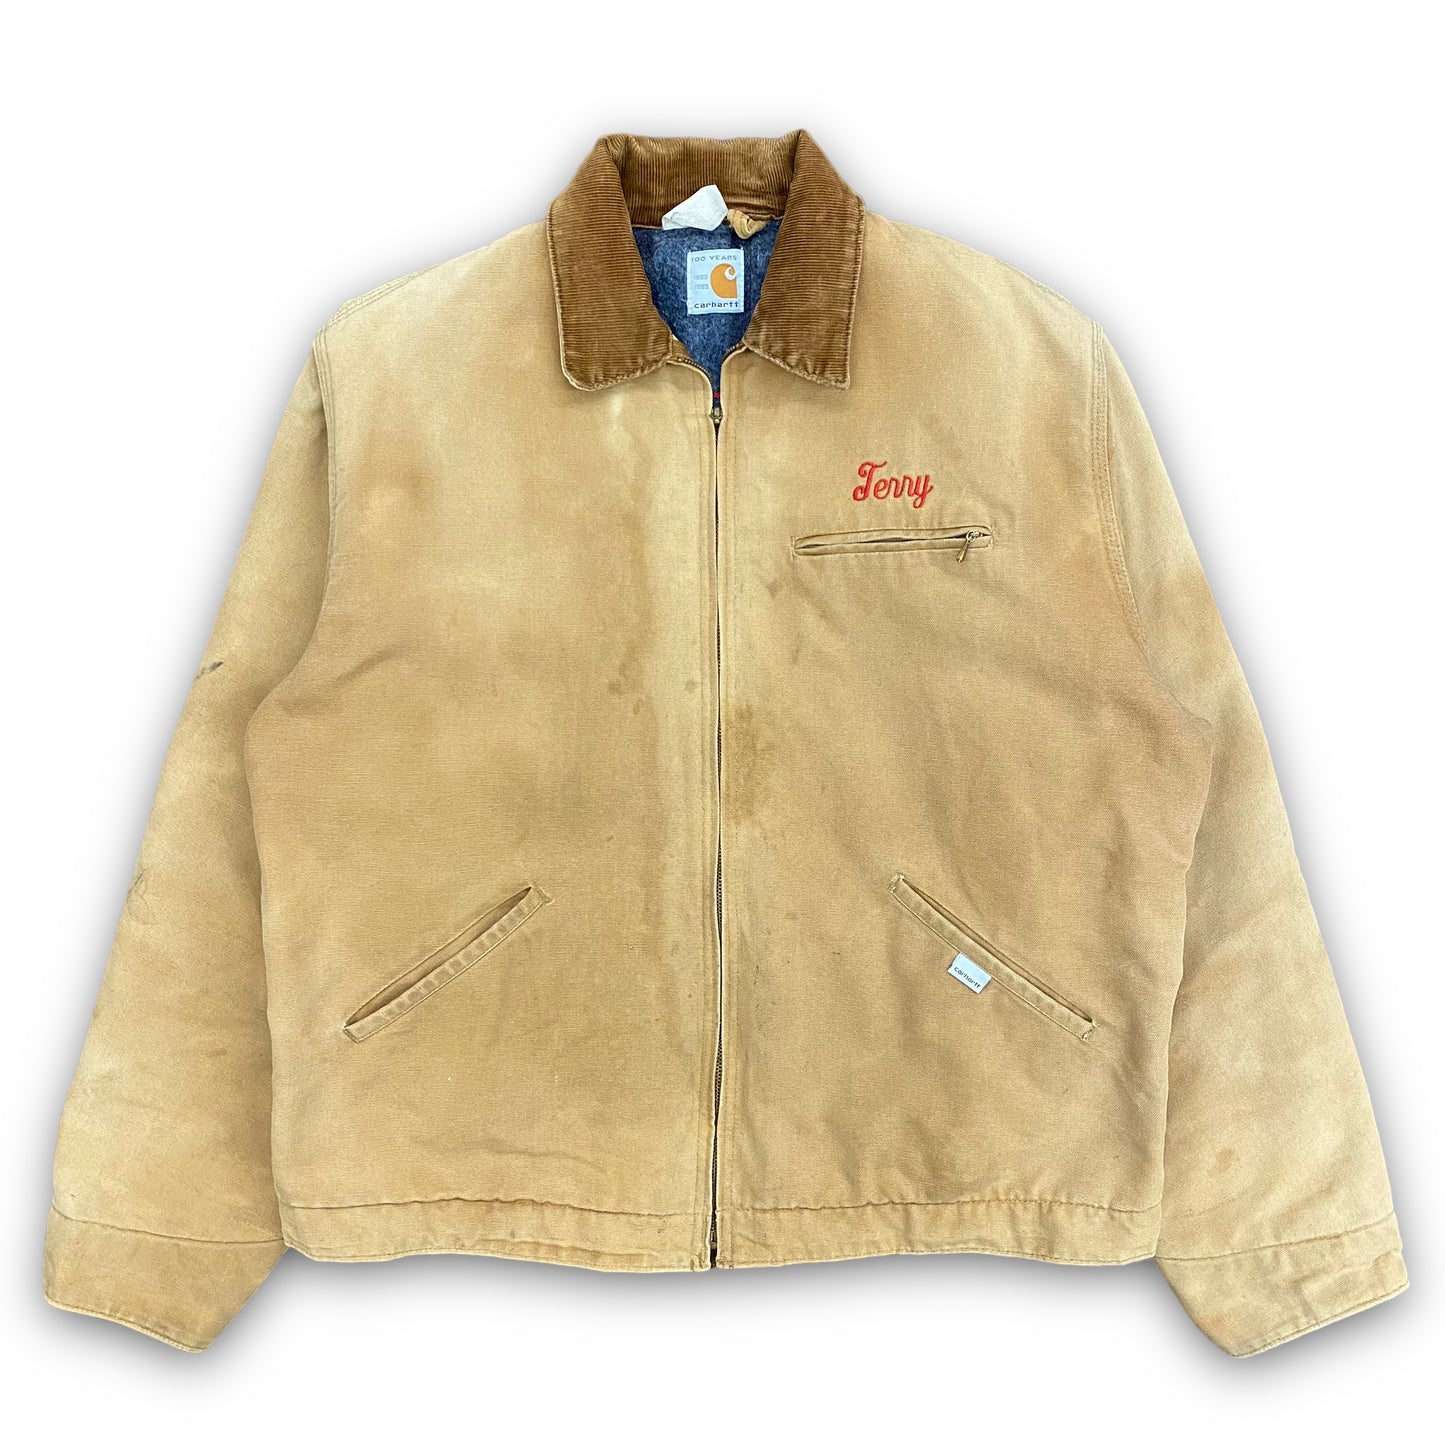 Vintage 1989 Carhartt Blanket Lined Detroit Jacket - Size Large